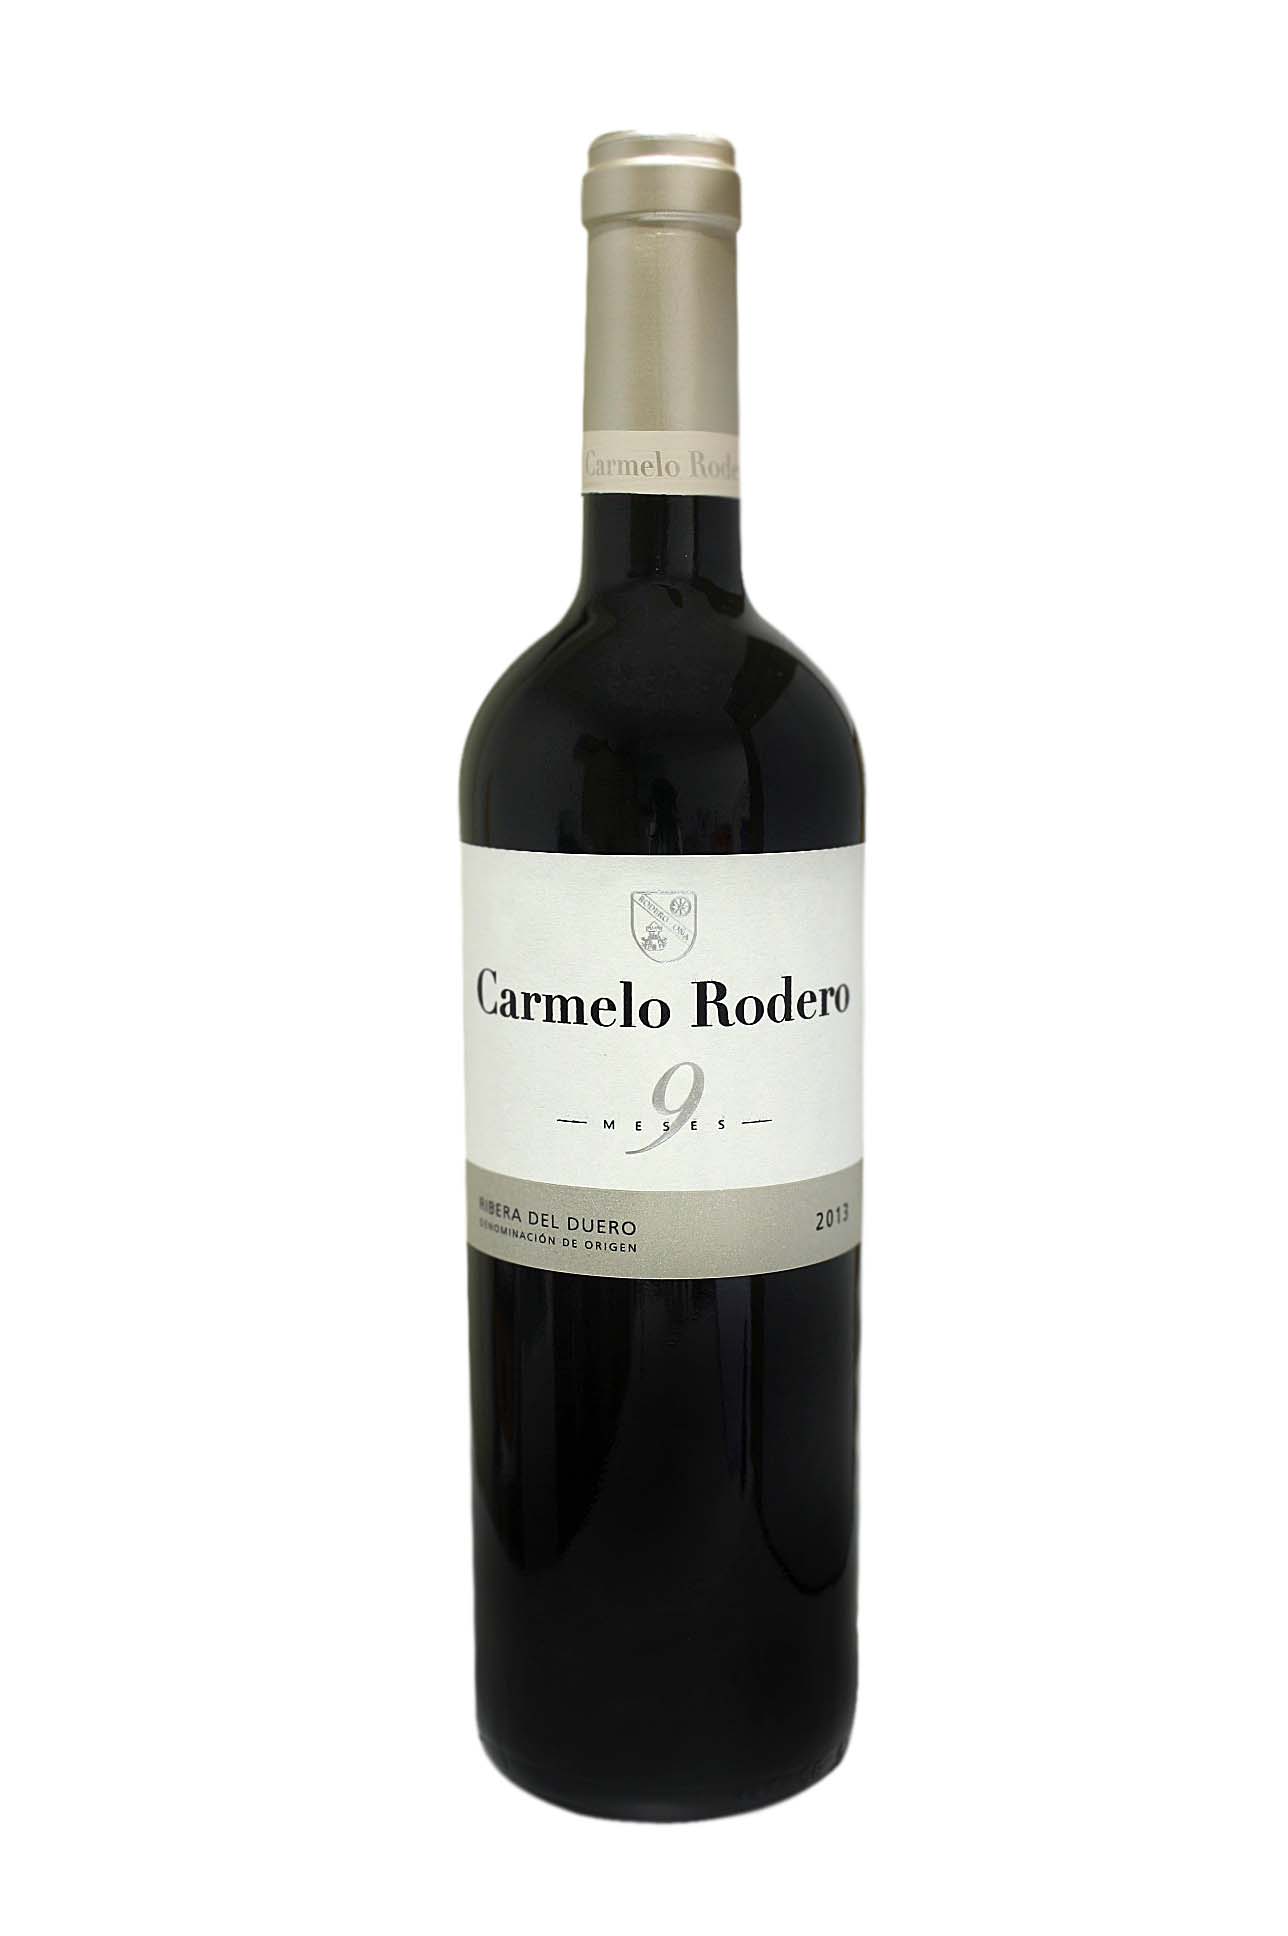 Carmelo Rodero wine